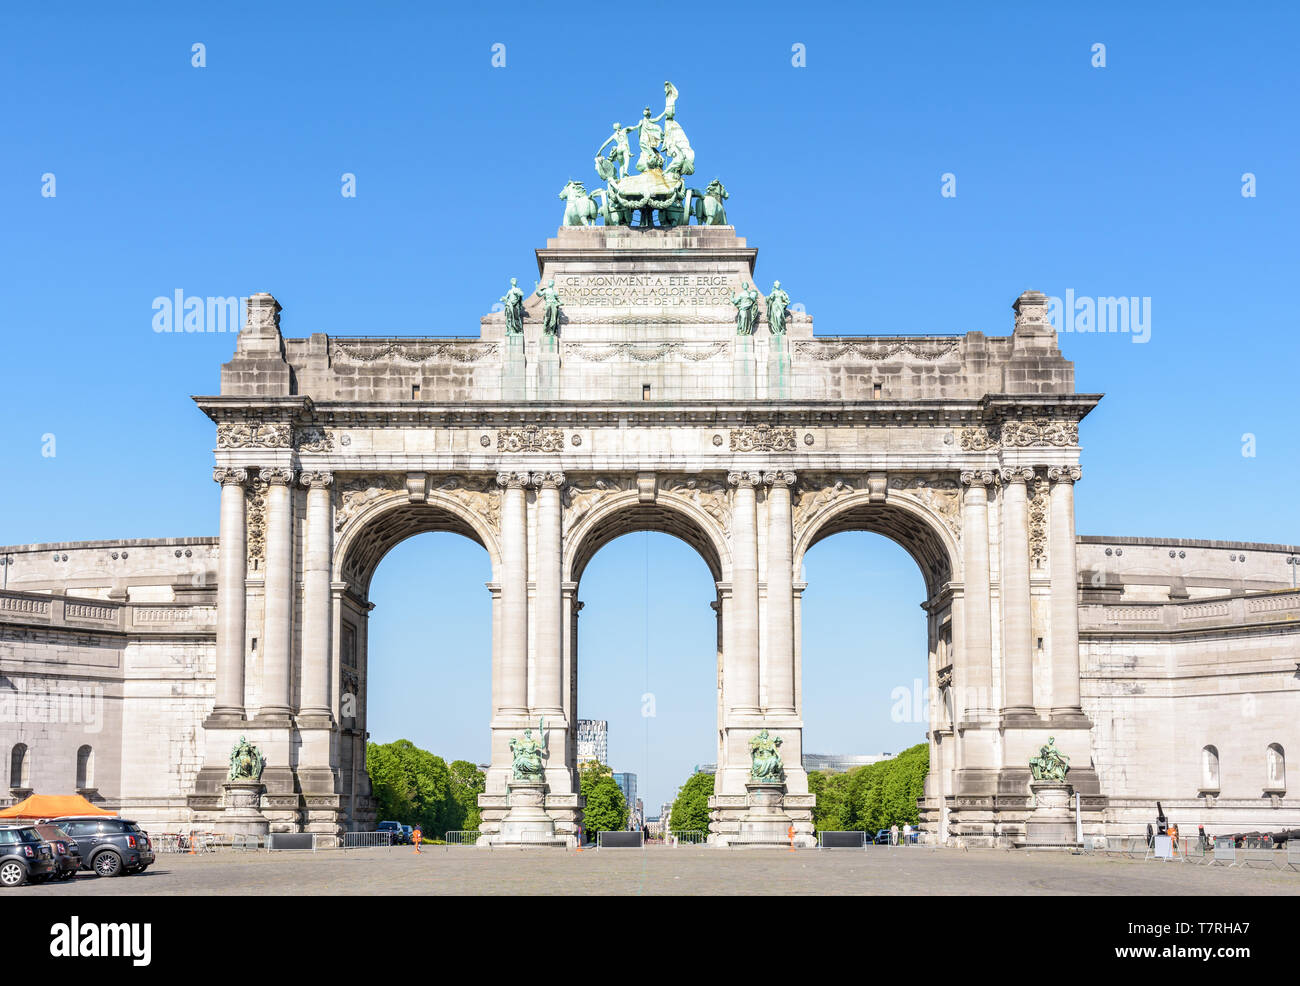 Vue avant du côté est de l'arcade du Cinquantenaire, l'Arc de Triomphe érigé dans le parc du Cinquantenaire à Bruxelles, Belgique. Banque D'Images